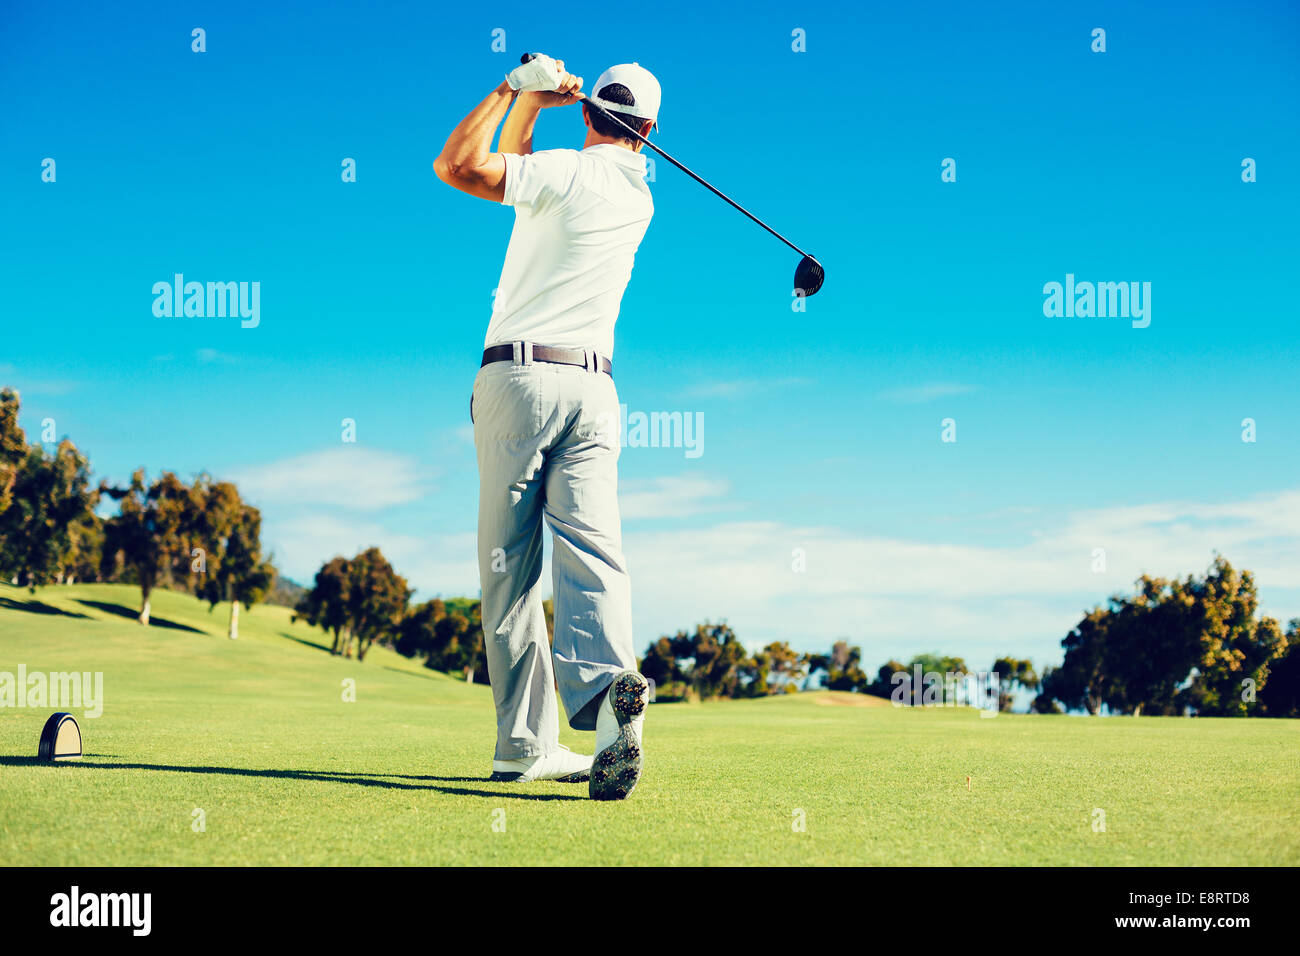 Golfeur jouant sur beau terrain de Golf Banque D'Images